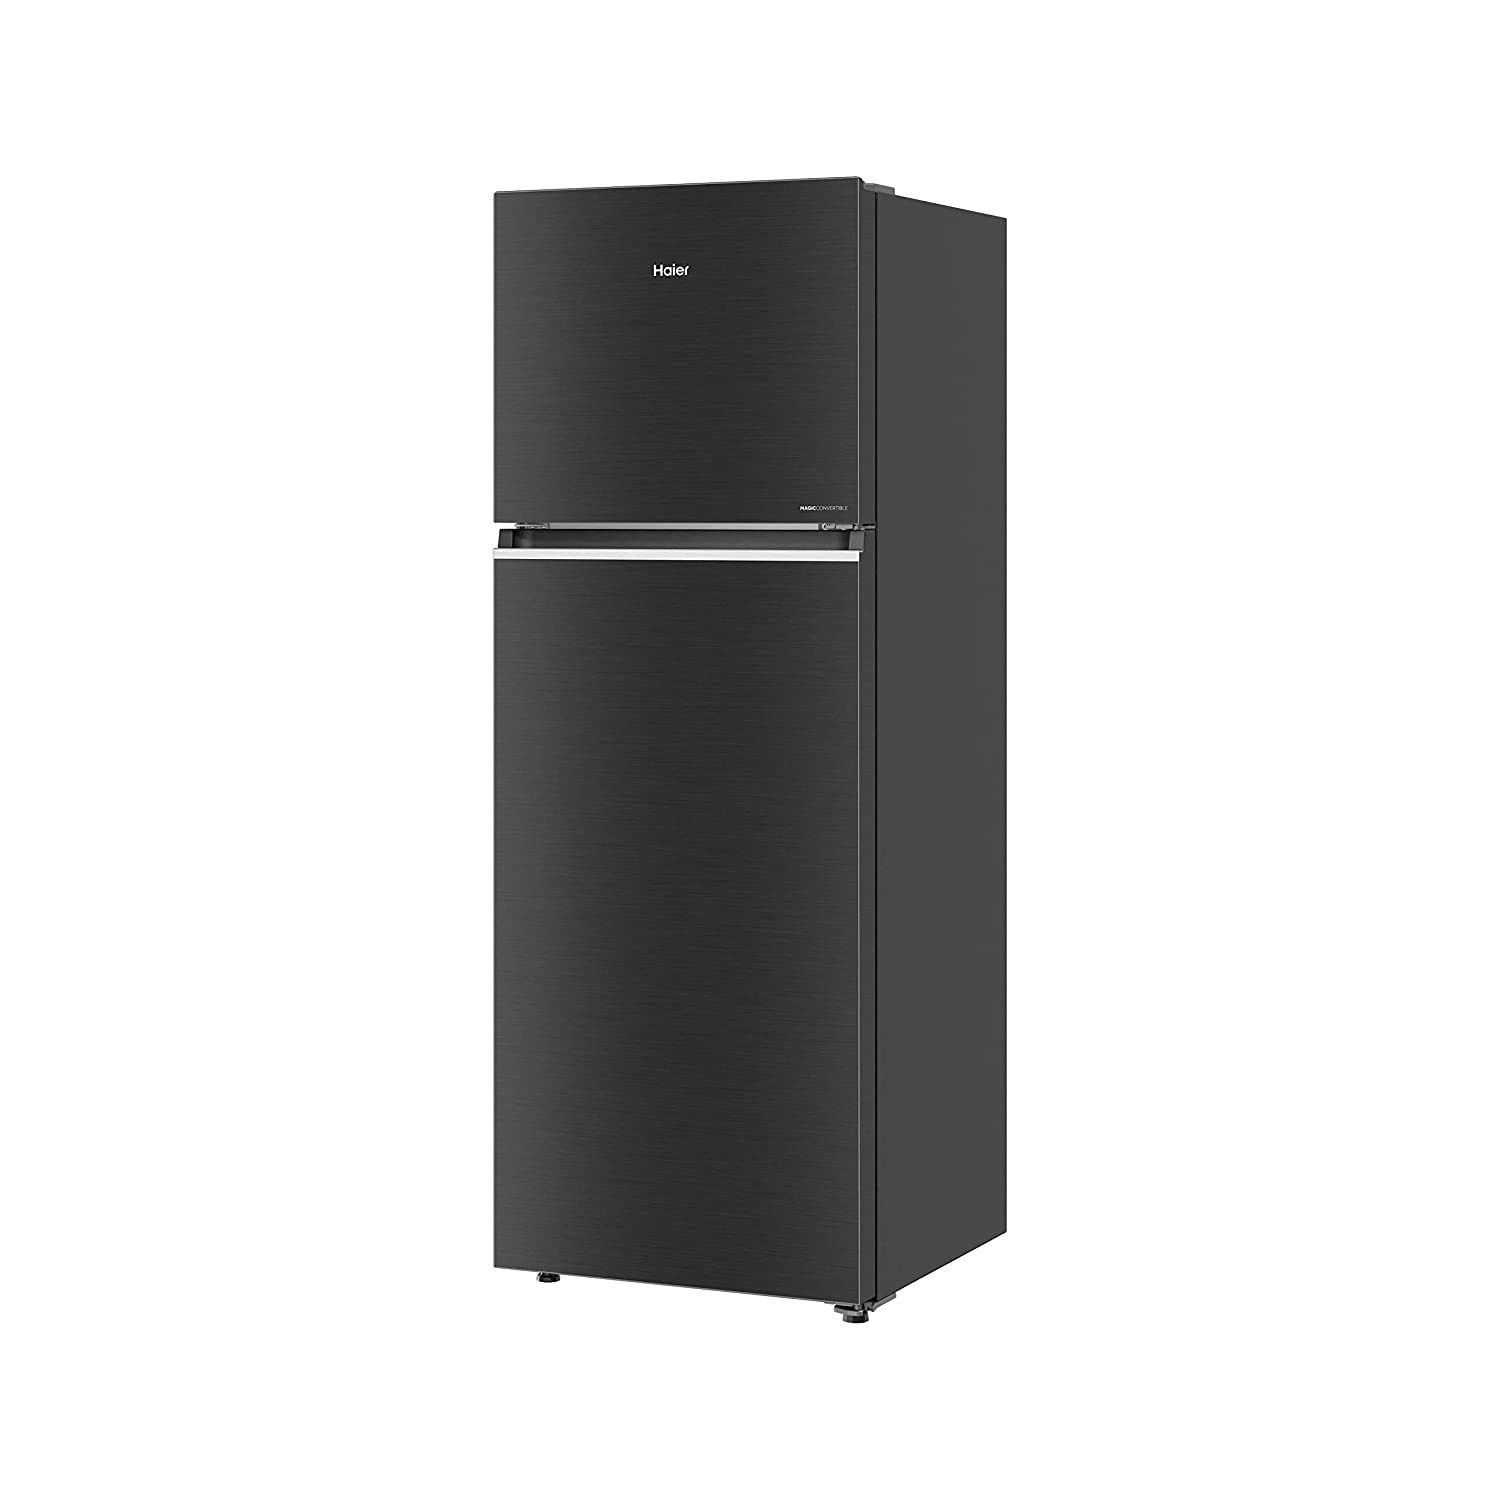 Haier 345 L Double Door Refrigerator